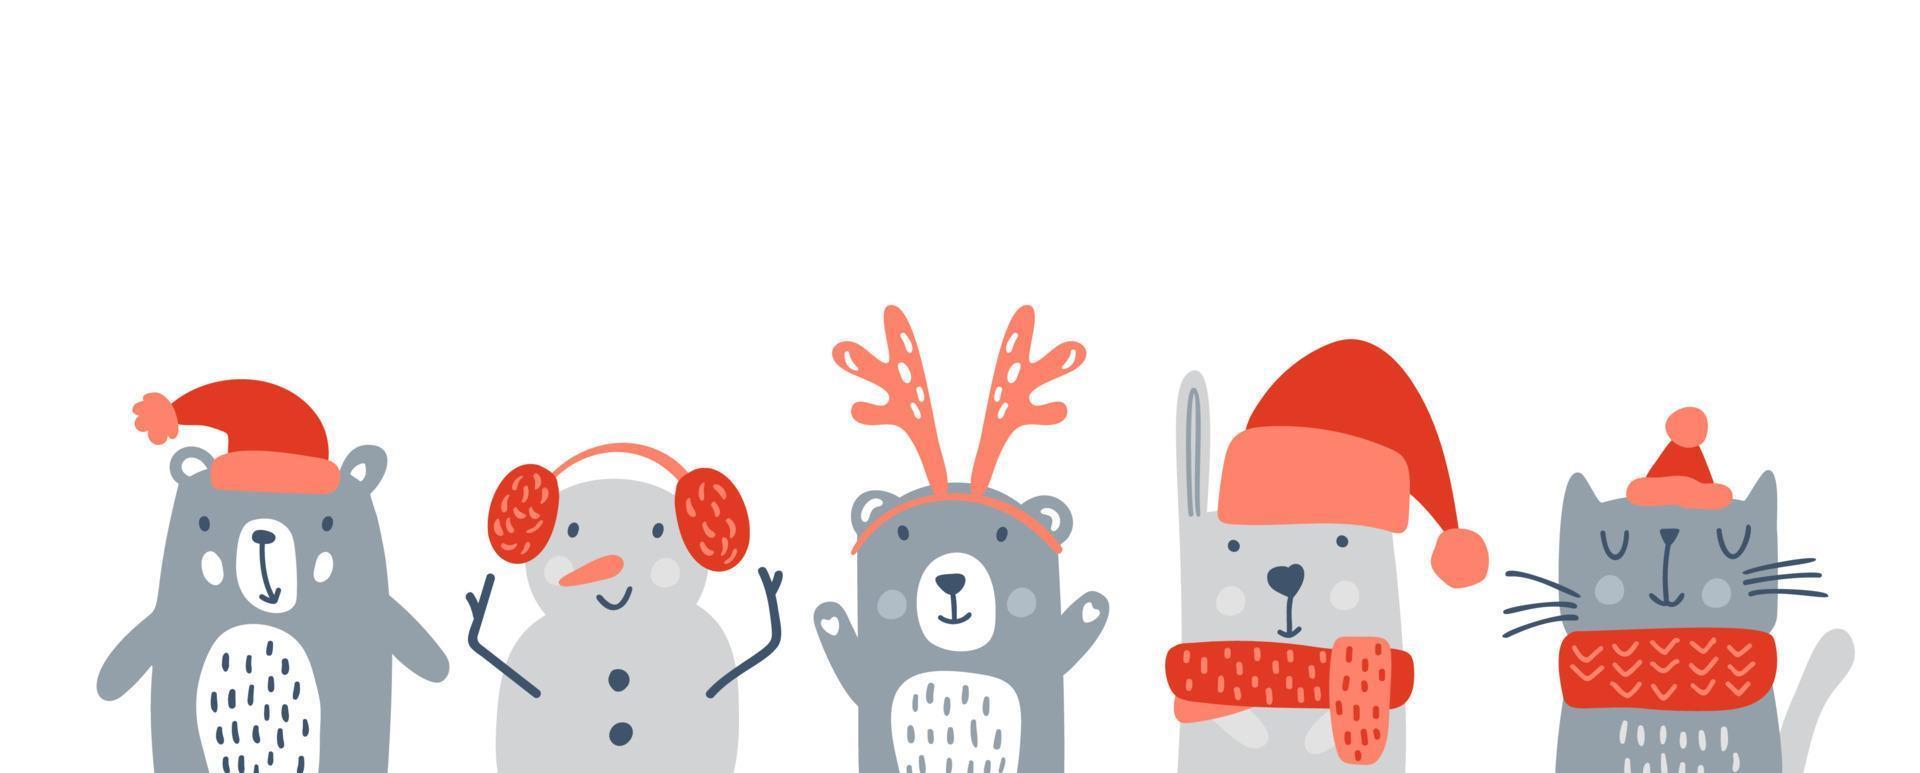 conjunto de niños lindos animales navideños oso, muñeco de nieve lindo conejo y gato. vector ilustración de invierno de bebé para camiseta de guardería, ropa para niños, tarjeta de invitación, cartel. diseño infantil escandinavo simple